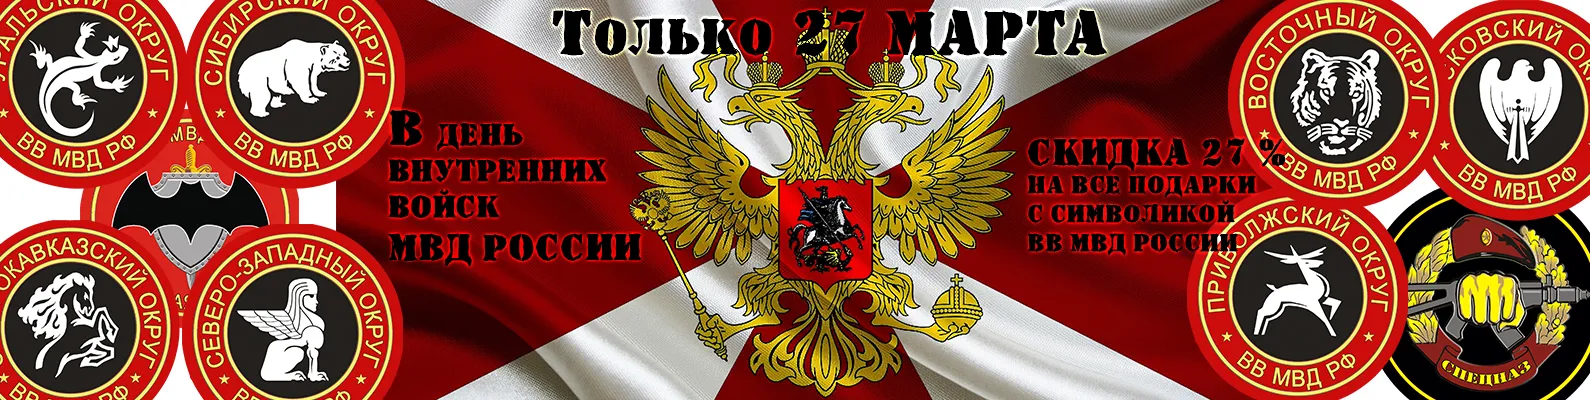 27 день внутренних войск мвд россии